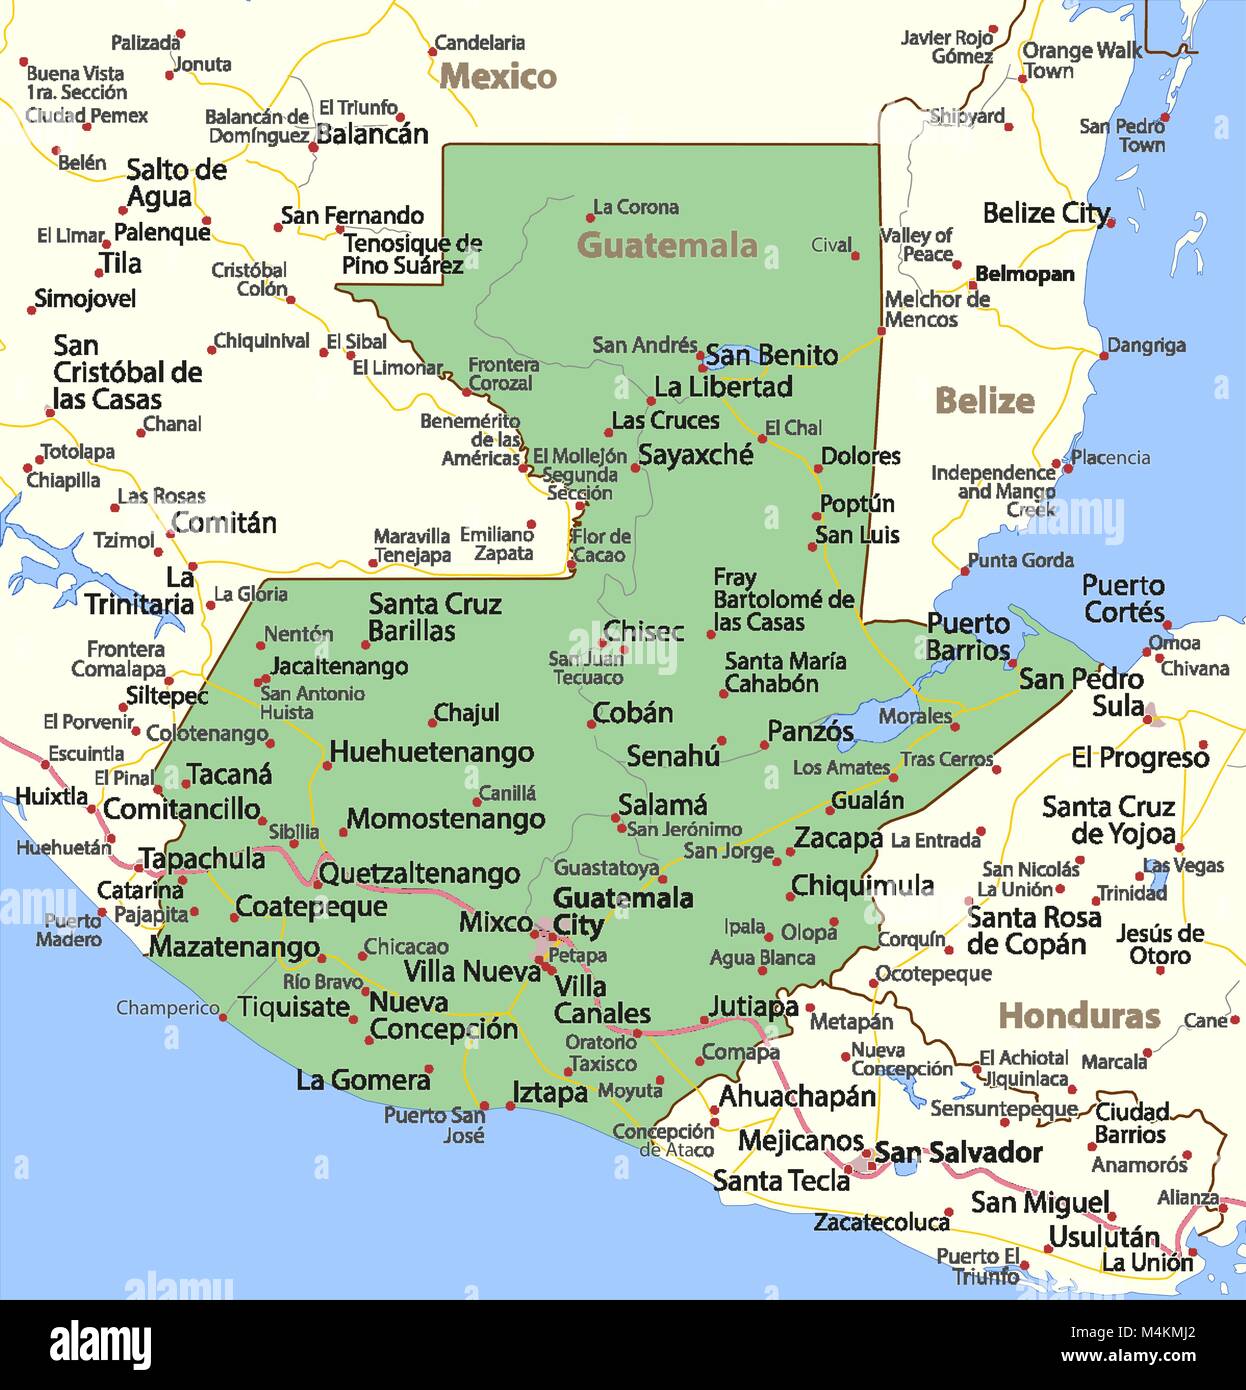 Mapa Del Vector De Guatemala Con Las Fronteras De Divisiones Pdmrea 4661